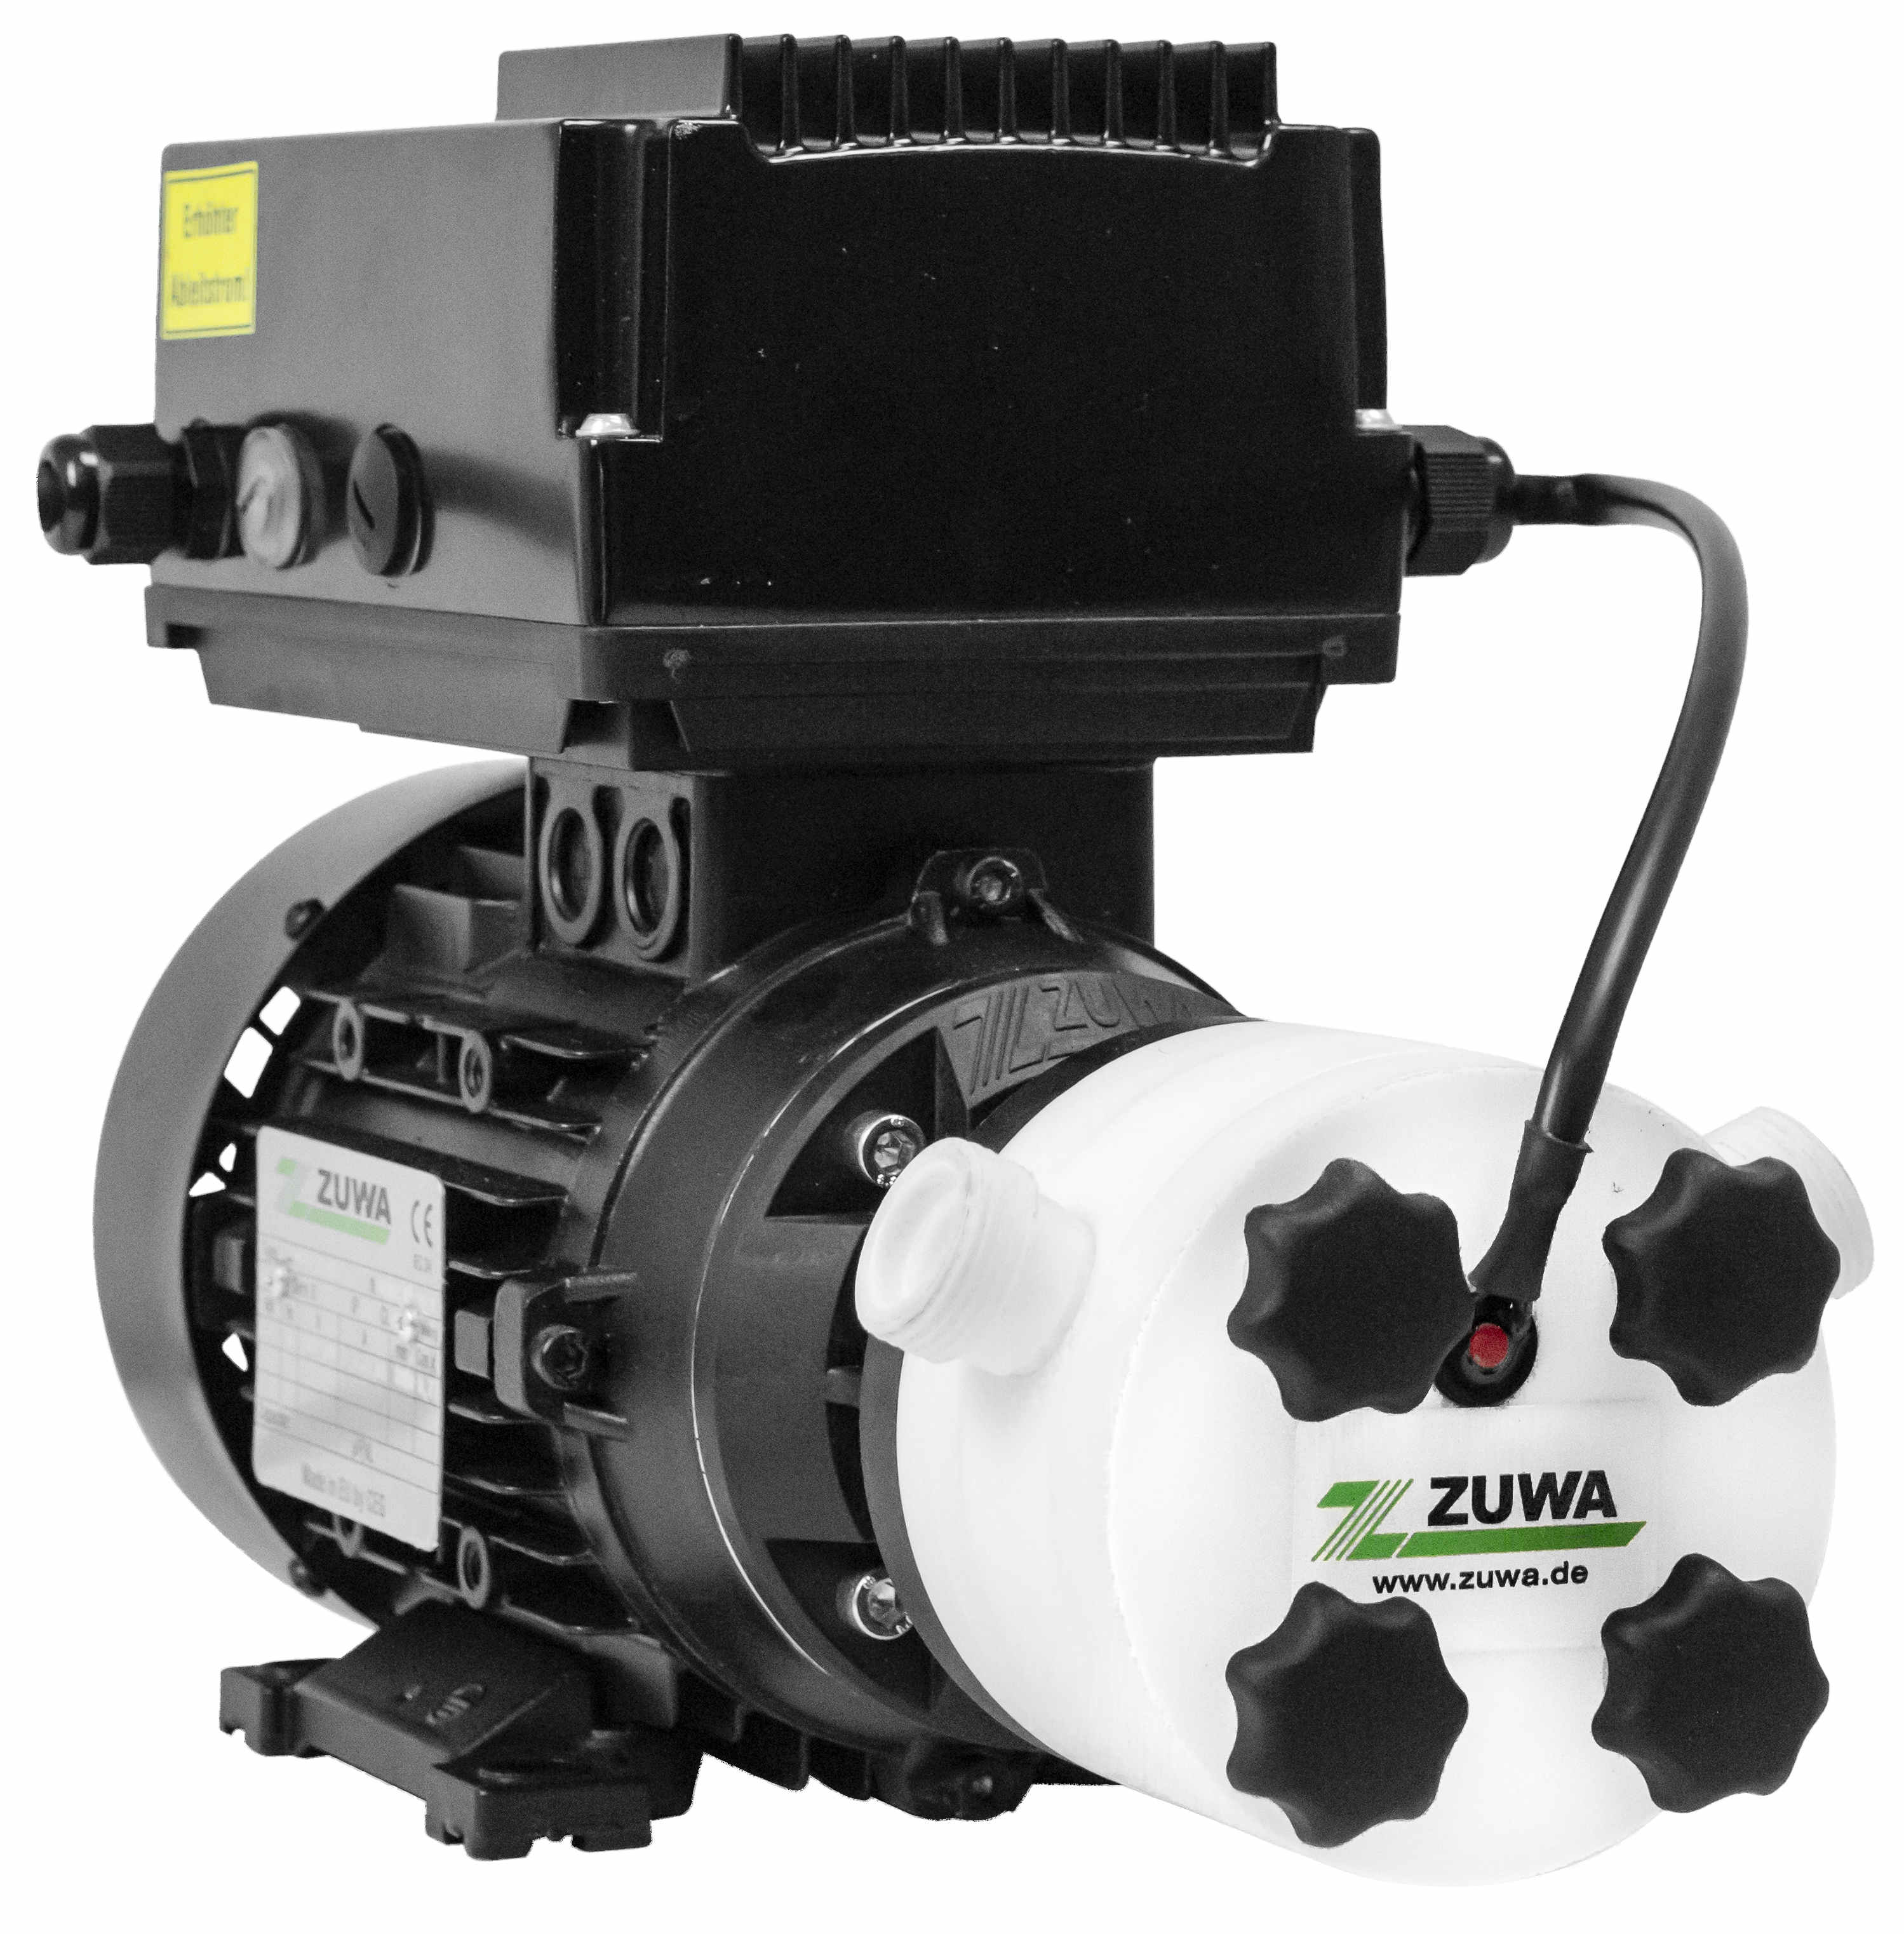 Zuwa Impellerpumpe ACOSTAR/E 2000-A/PT, 28 l/min, 230V FU - 14129127420B